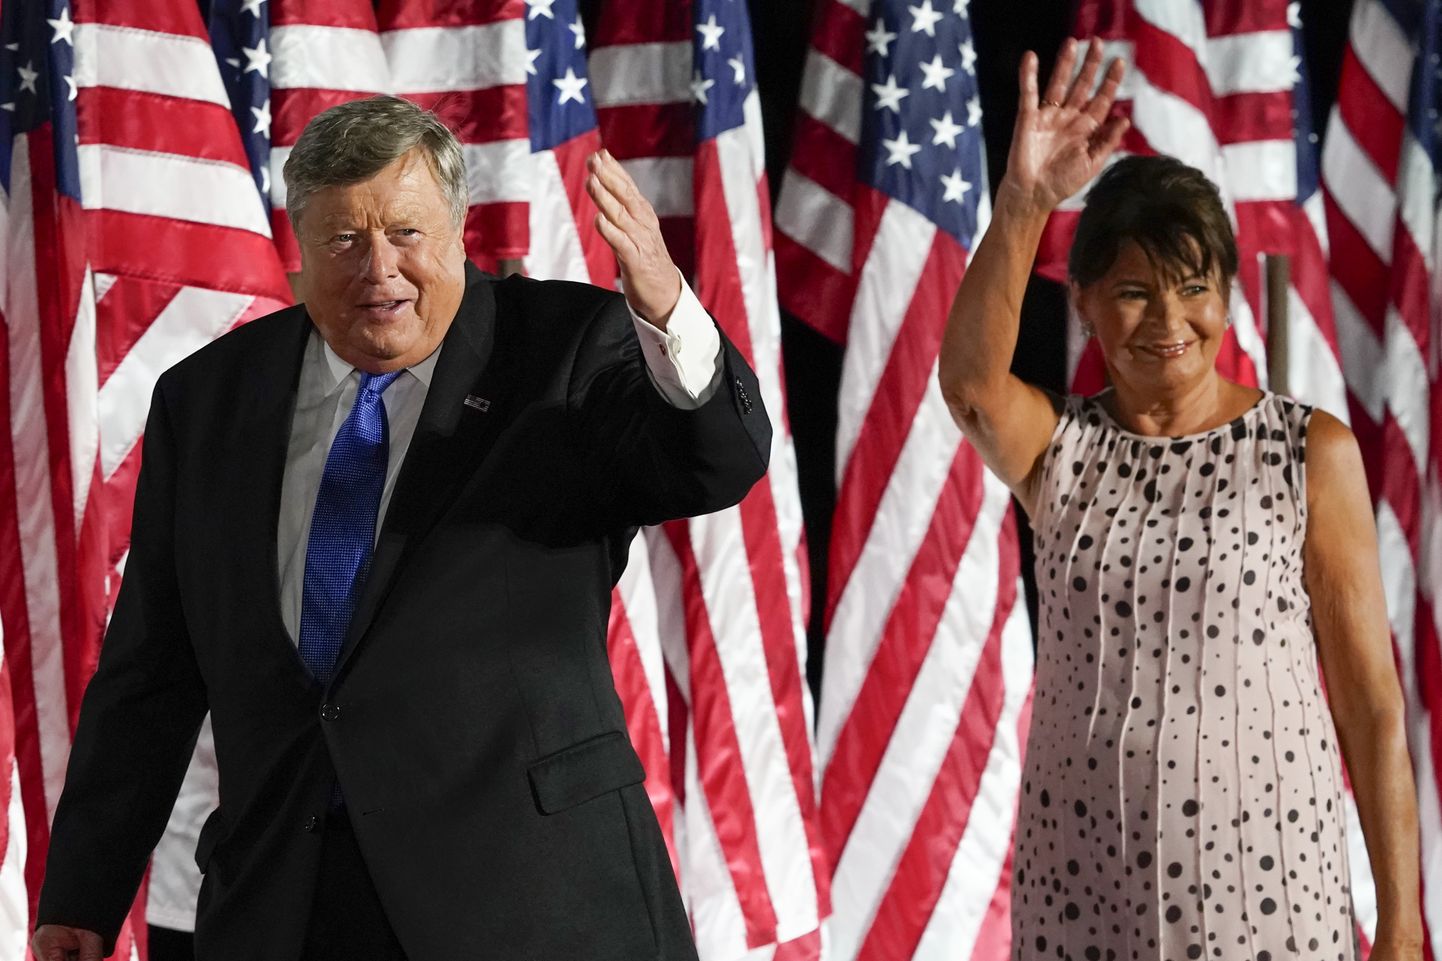 Melania Trumpi vanemad Viktor Knavs ja Amalija Knavs 27. augustil 2020 Washingtonis Valges Majas pärast president Donald Trumpi kõnet kohalolnutele lehvitamas